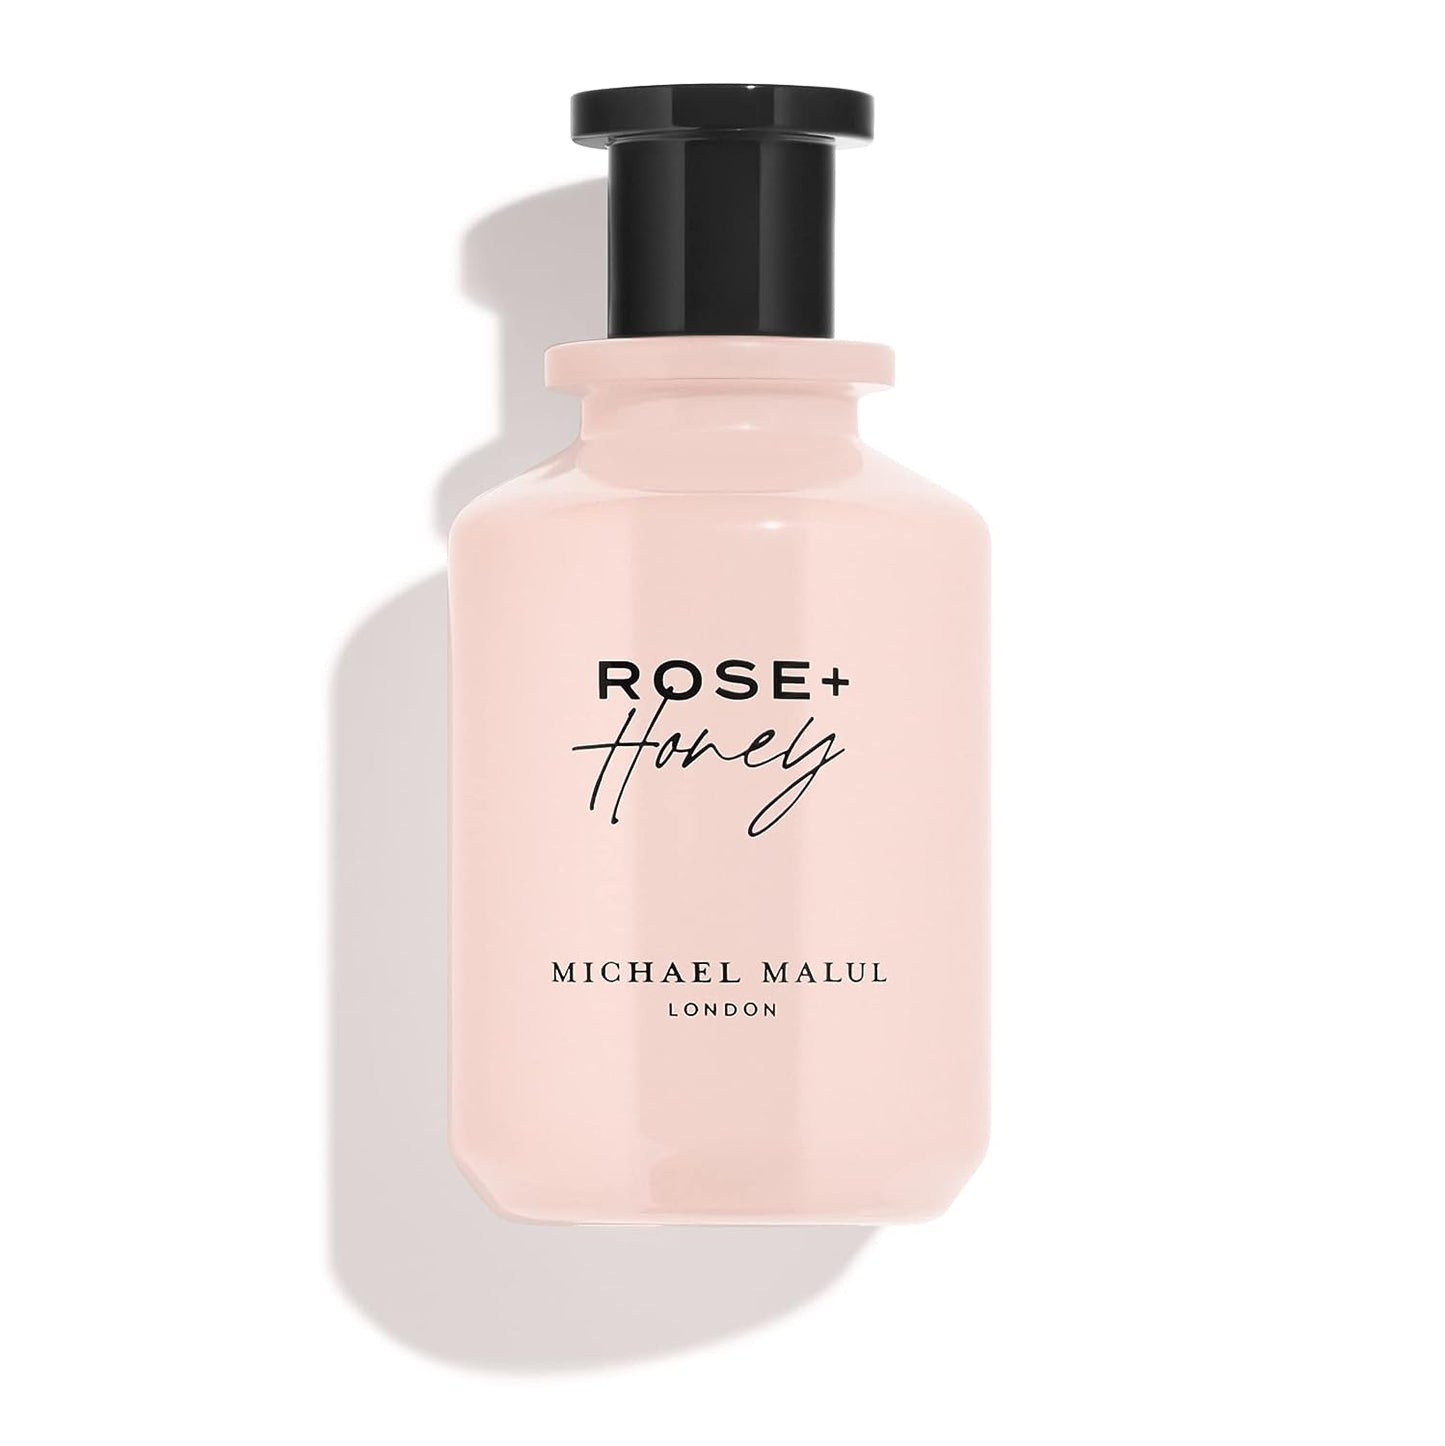 Rose + Honey,3.4Oz Fragrance, Eau De Parfum,100 Ml